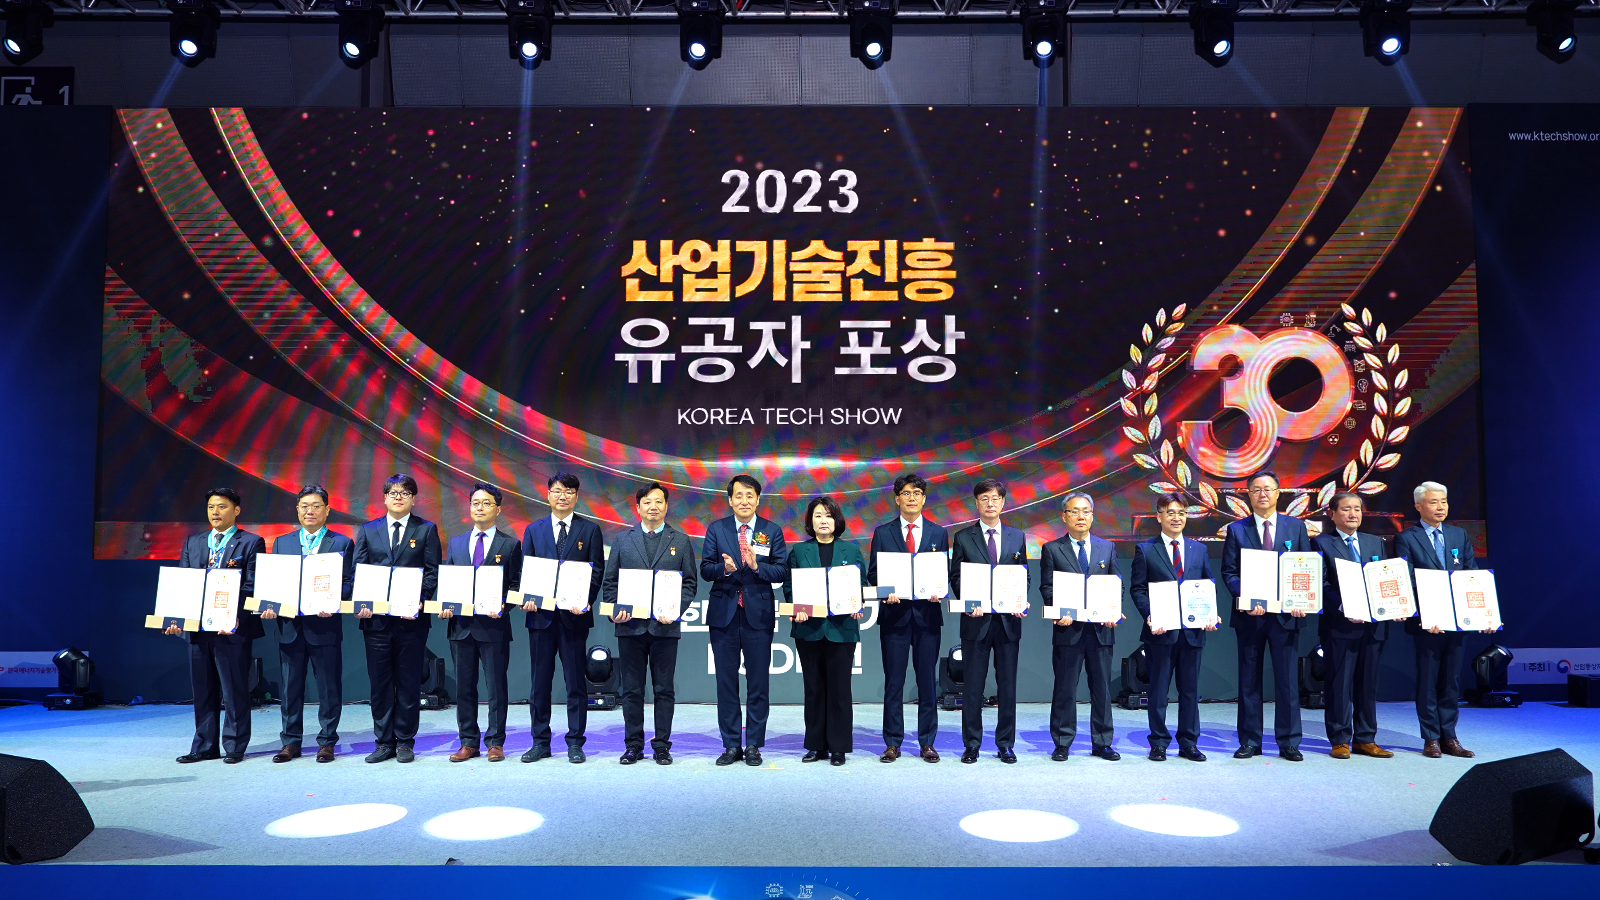 12월 6일 열린 산업통상자원부 주관 2023년 대한민국 산업기술 R&D 대전에서 조경구 팀장이 ‘산업기술진흥 유공 대통령 표창’을 수상했다